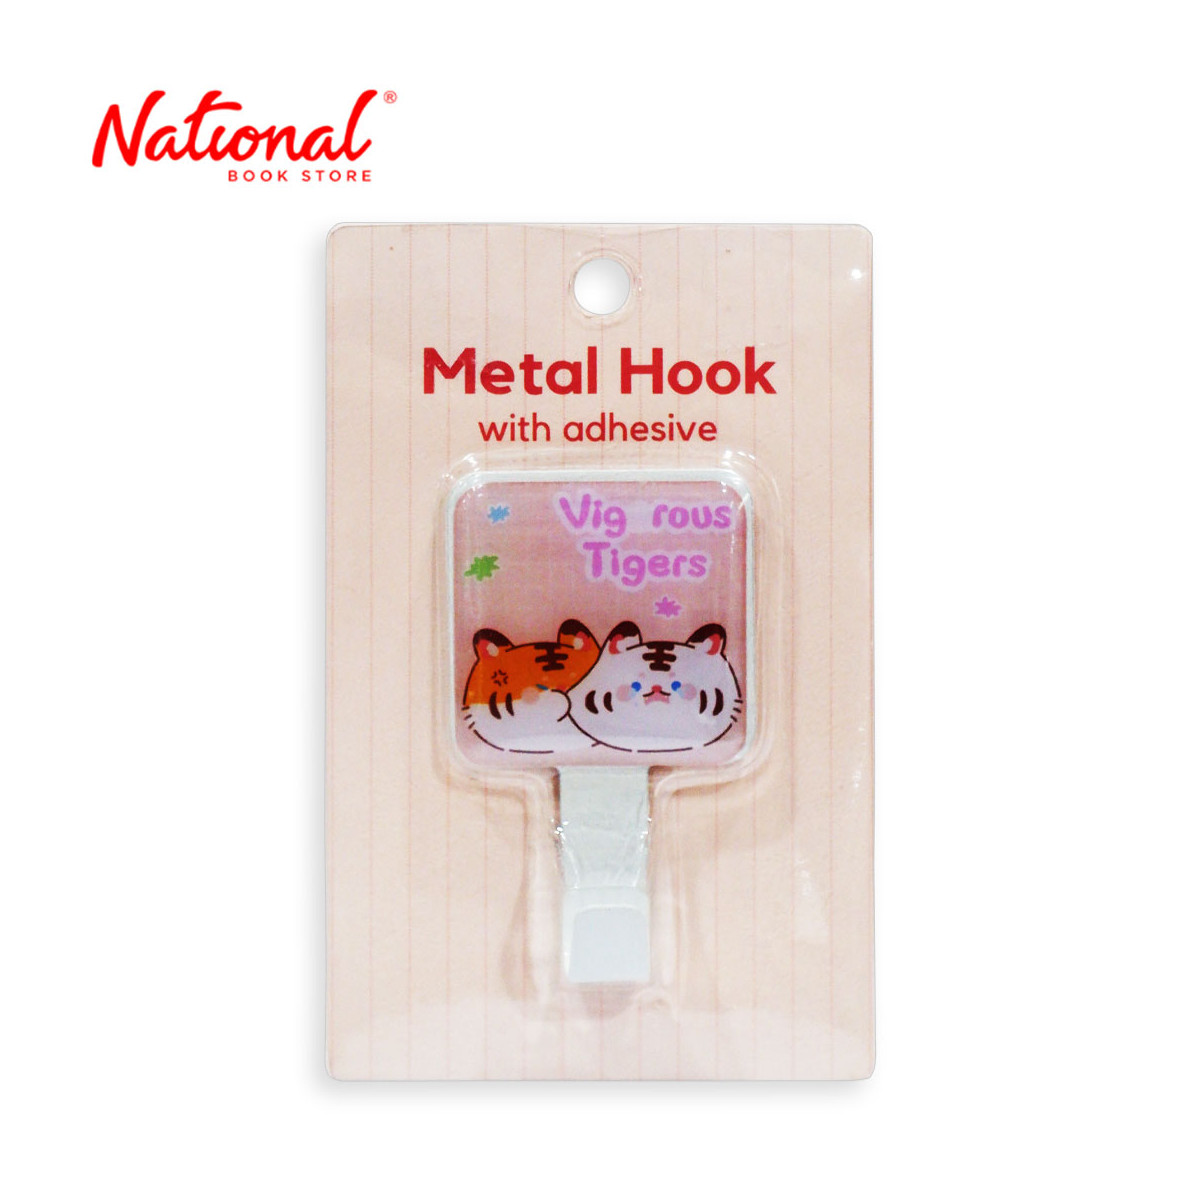 Metal Hook KJ-51-046 12.5x8cm - Housekeeping Supplies